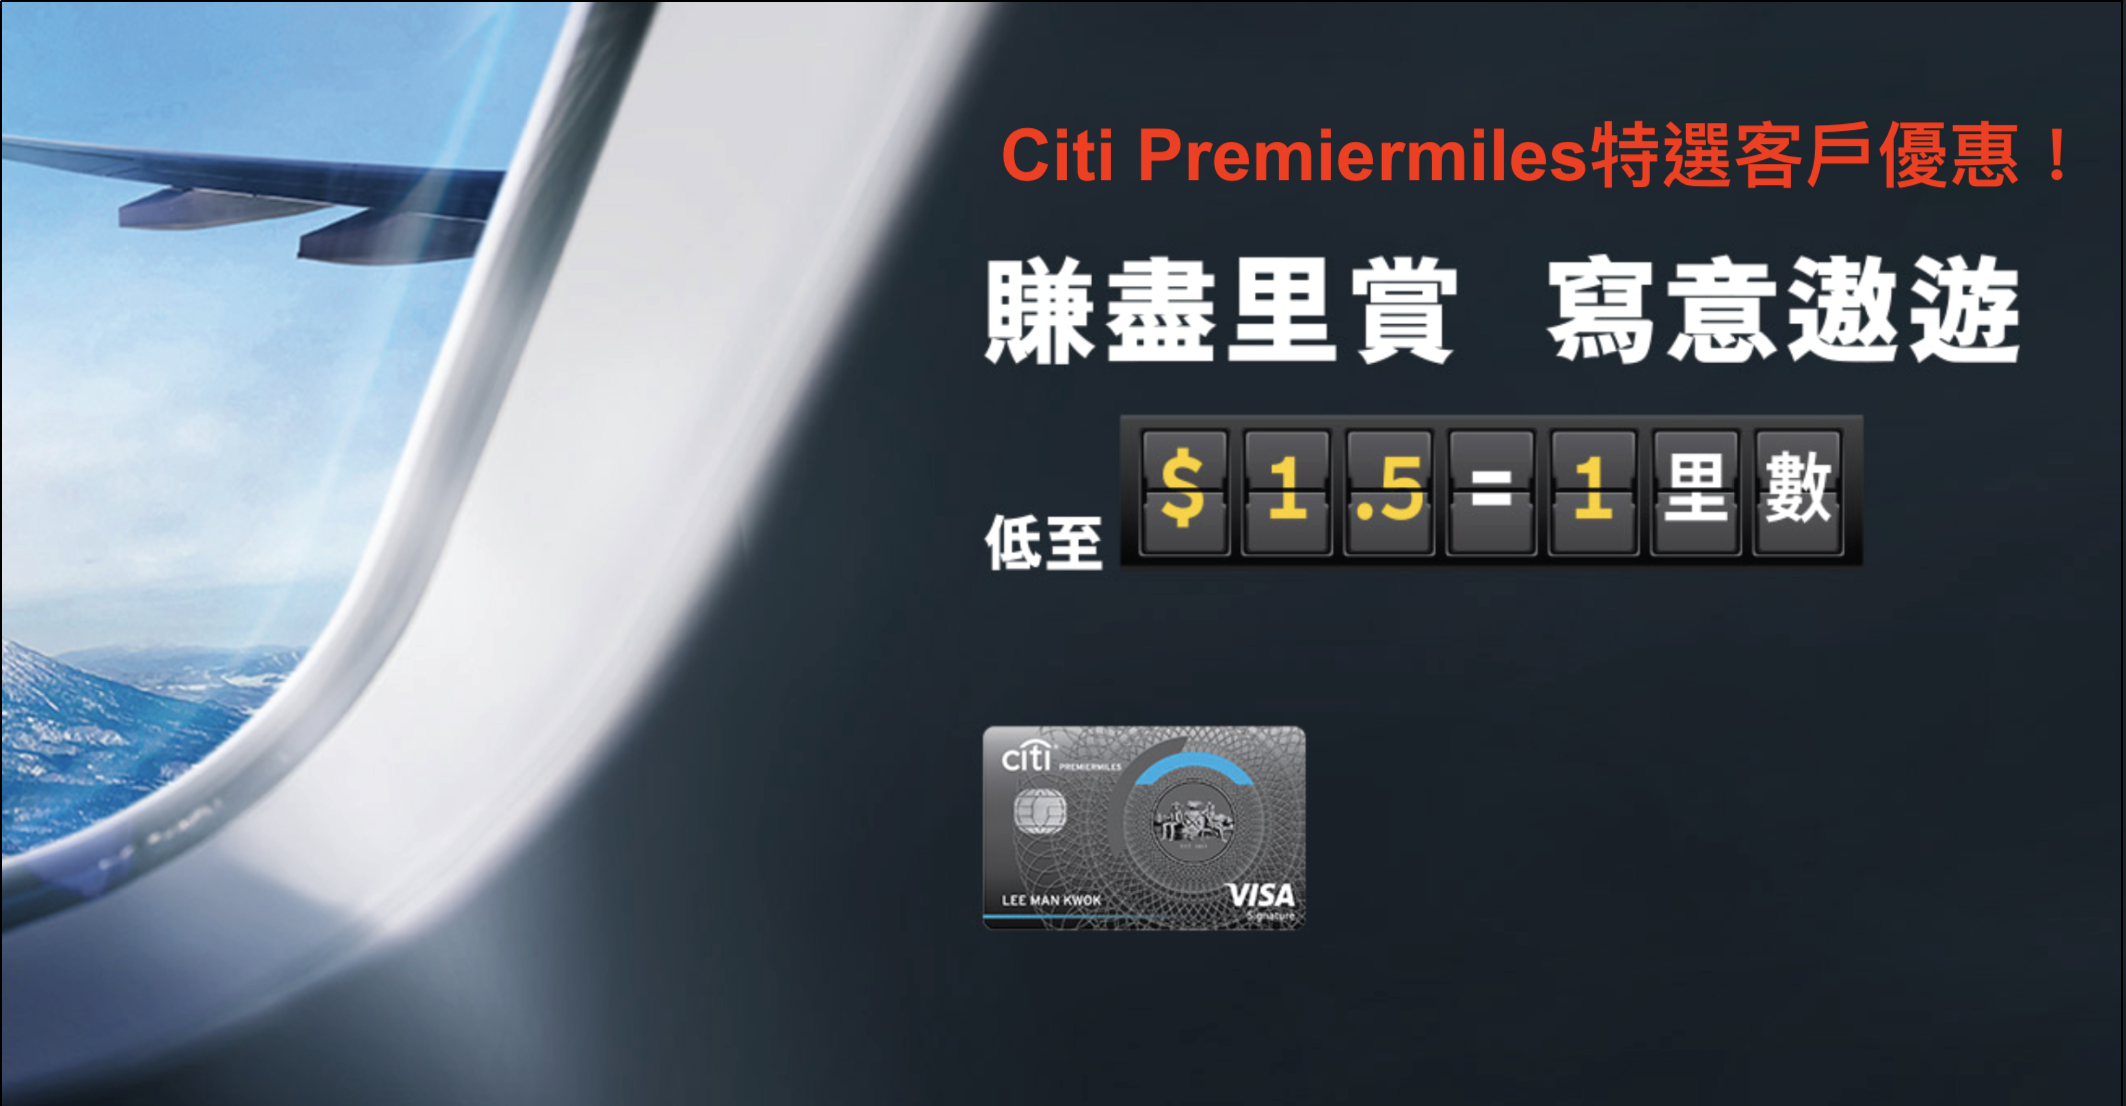 Citi PremierMiles信用卡2019簽賬推廣